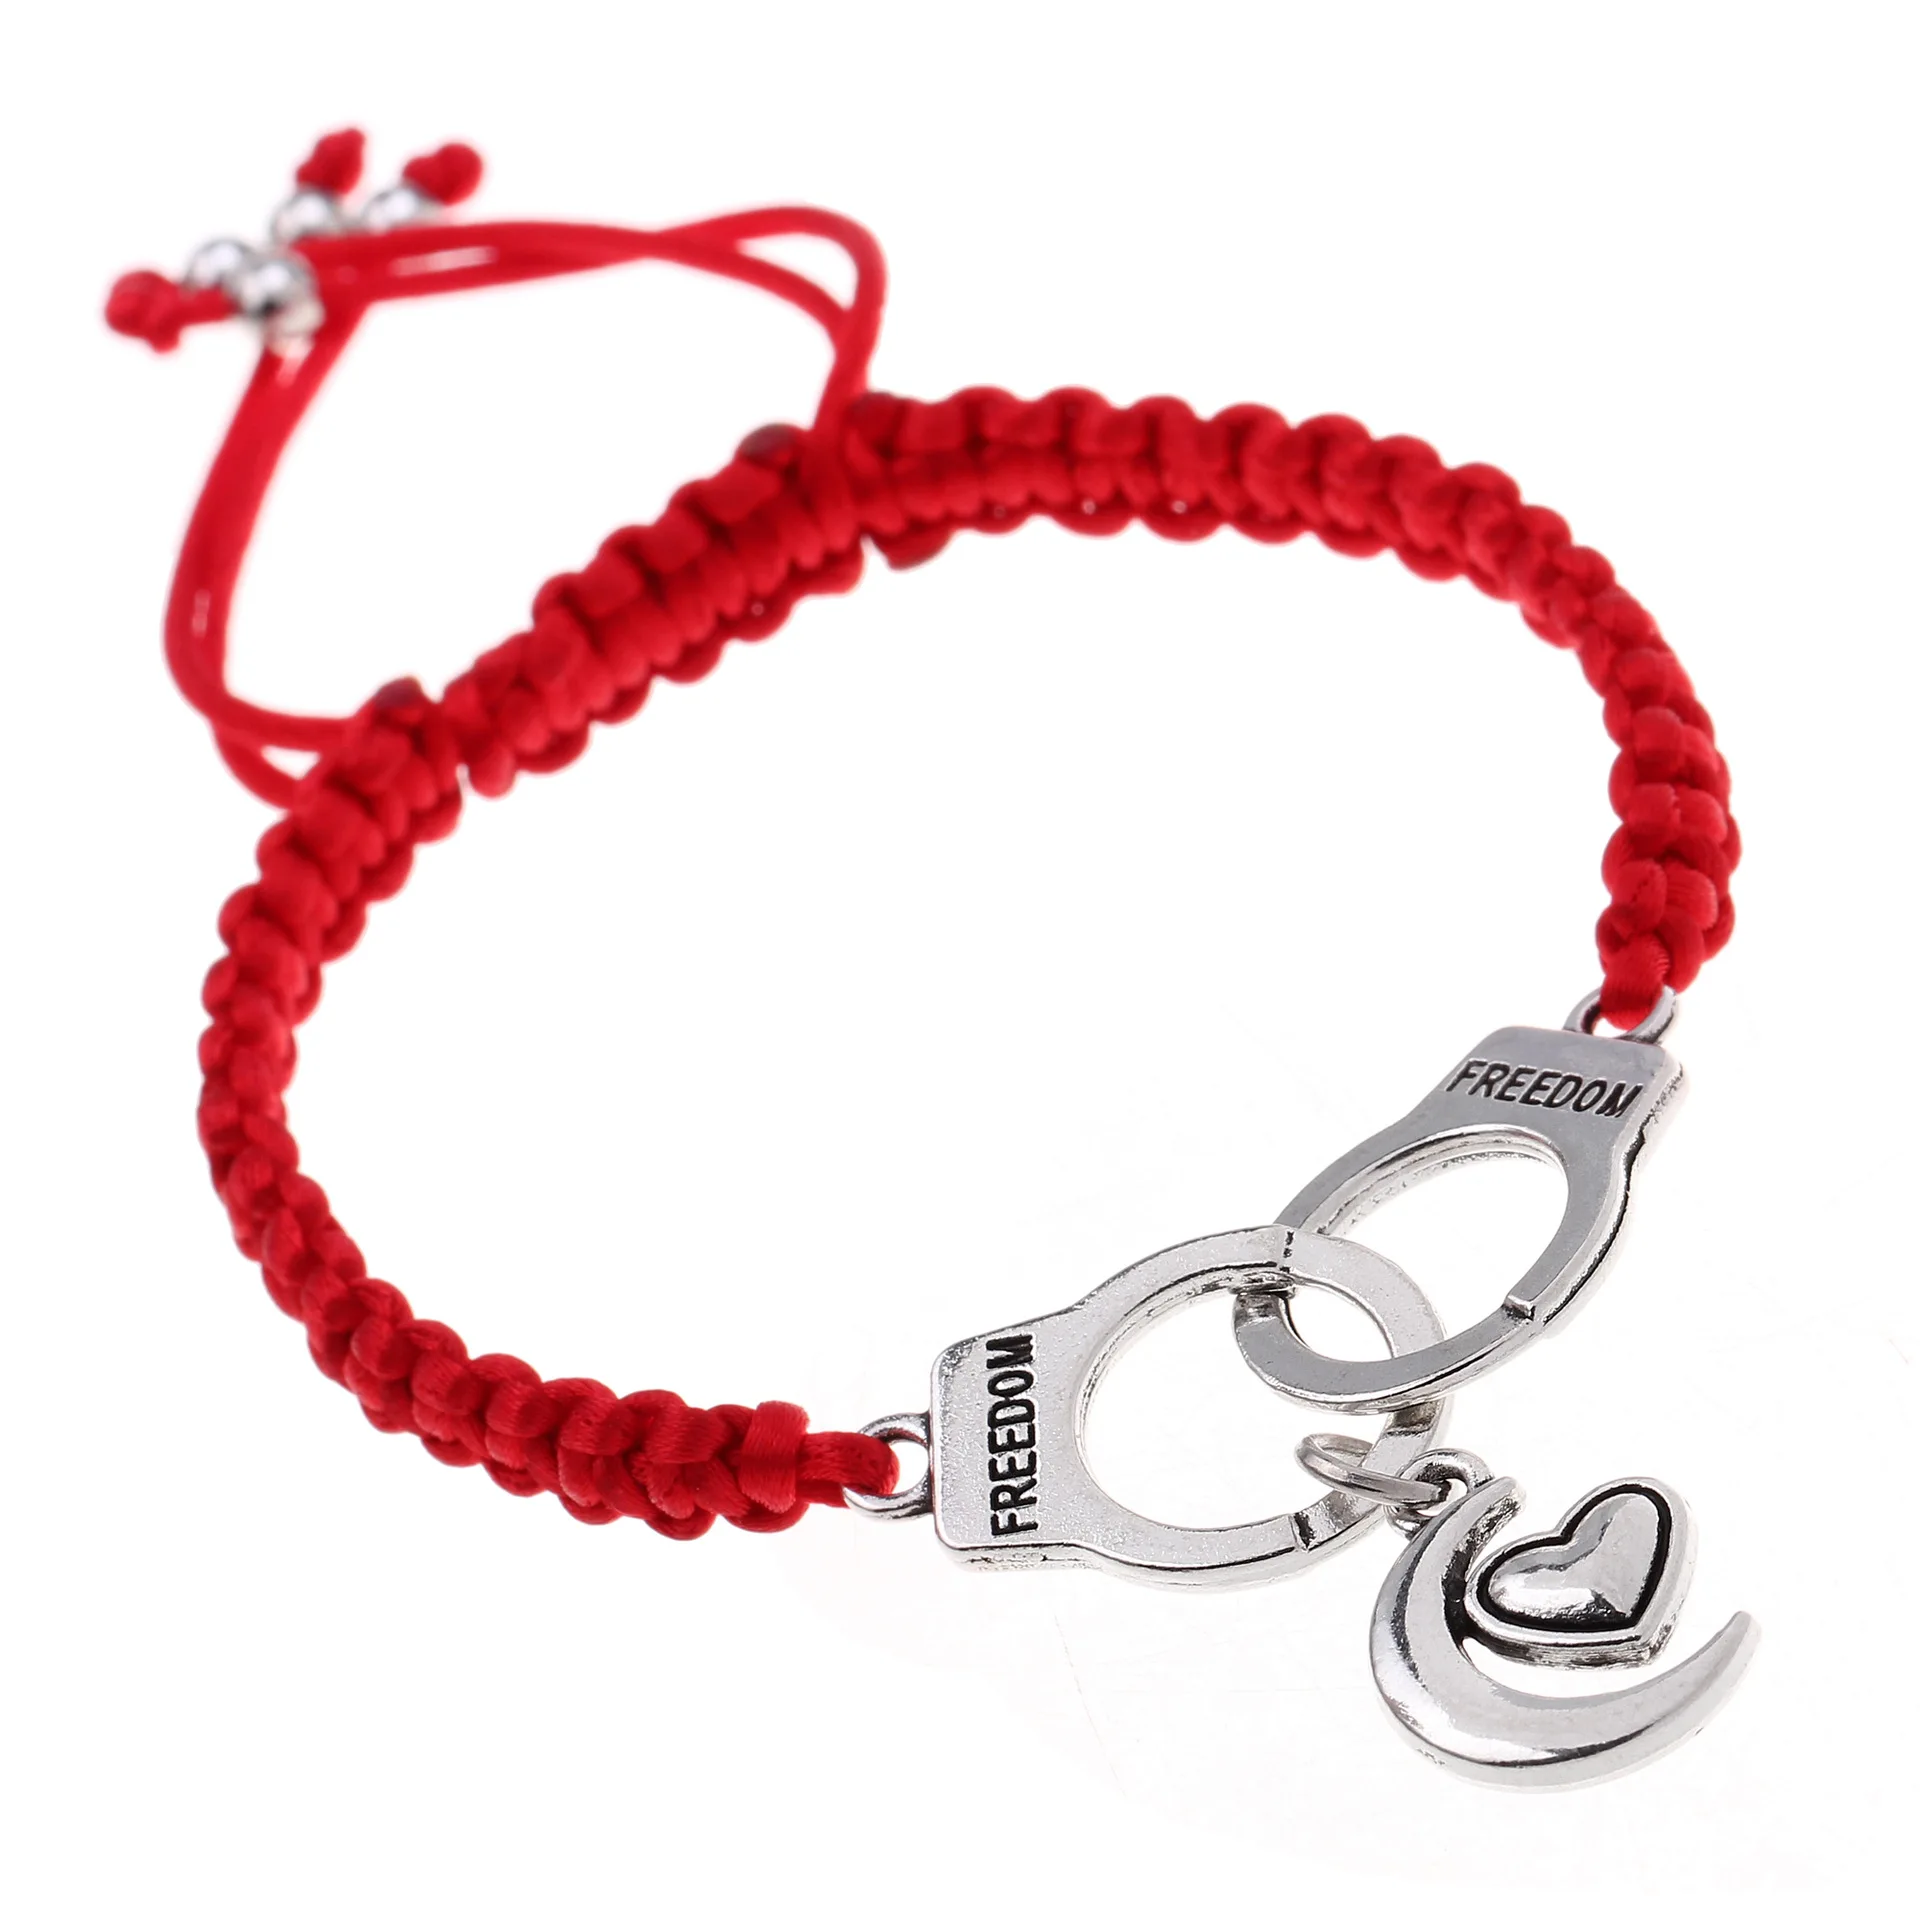 男性女性のための赤いロープラッキーカップルブレスレットを意味するカスタム編組 ラッキー Buy 幸運ブレスレット 赤ロープ幸運ブレスレット カスタムロープブレスレット Product On Alibaba Com